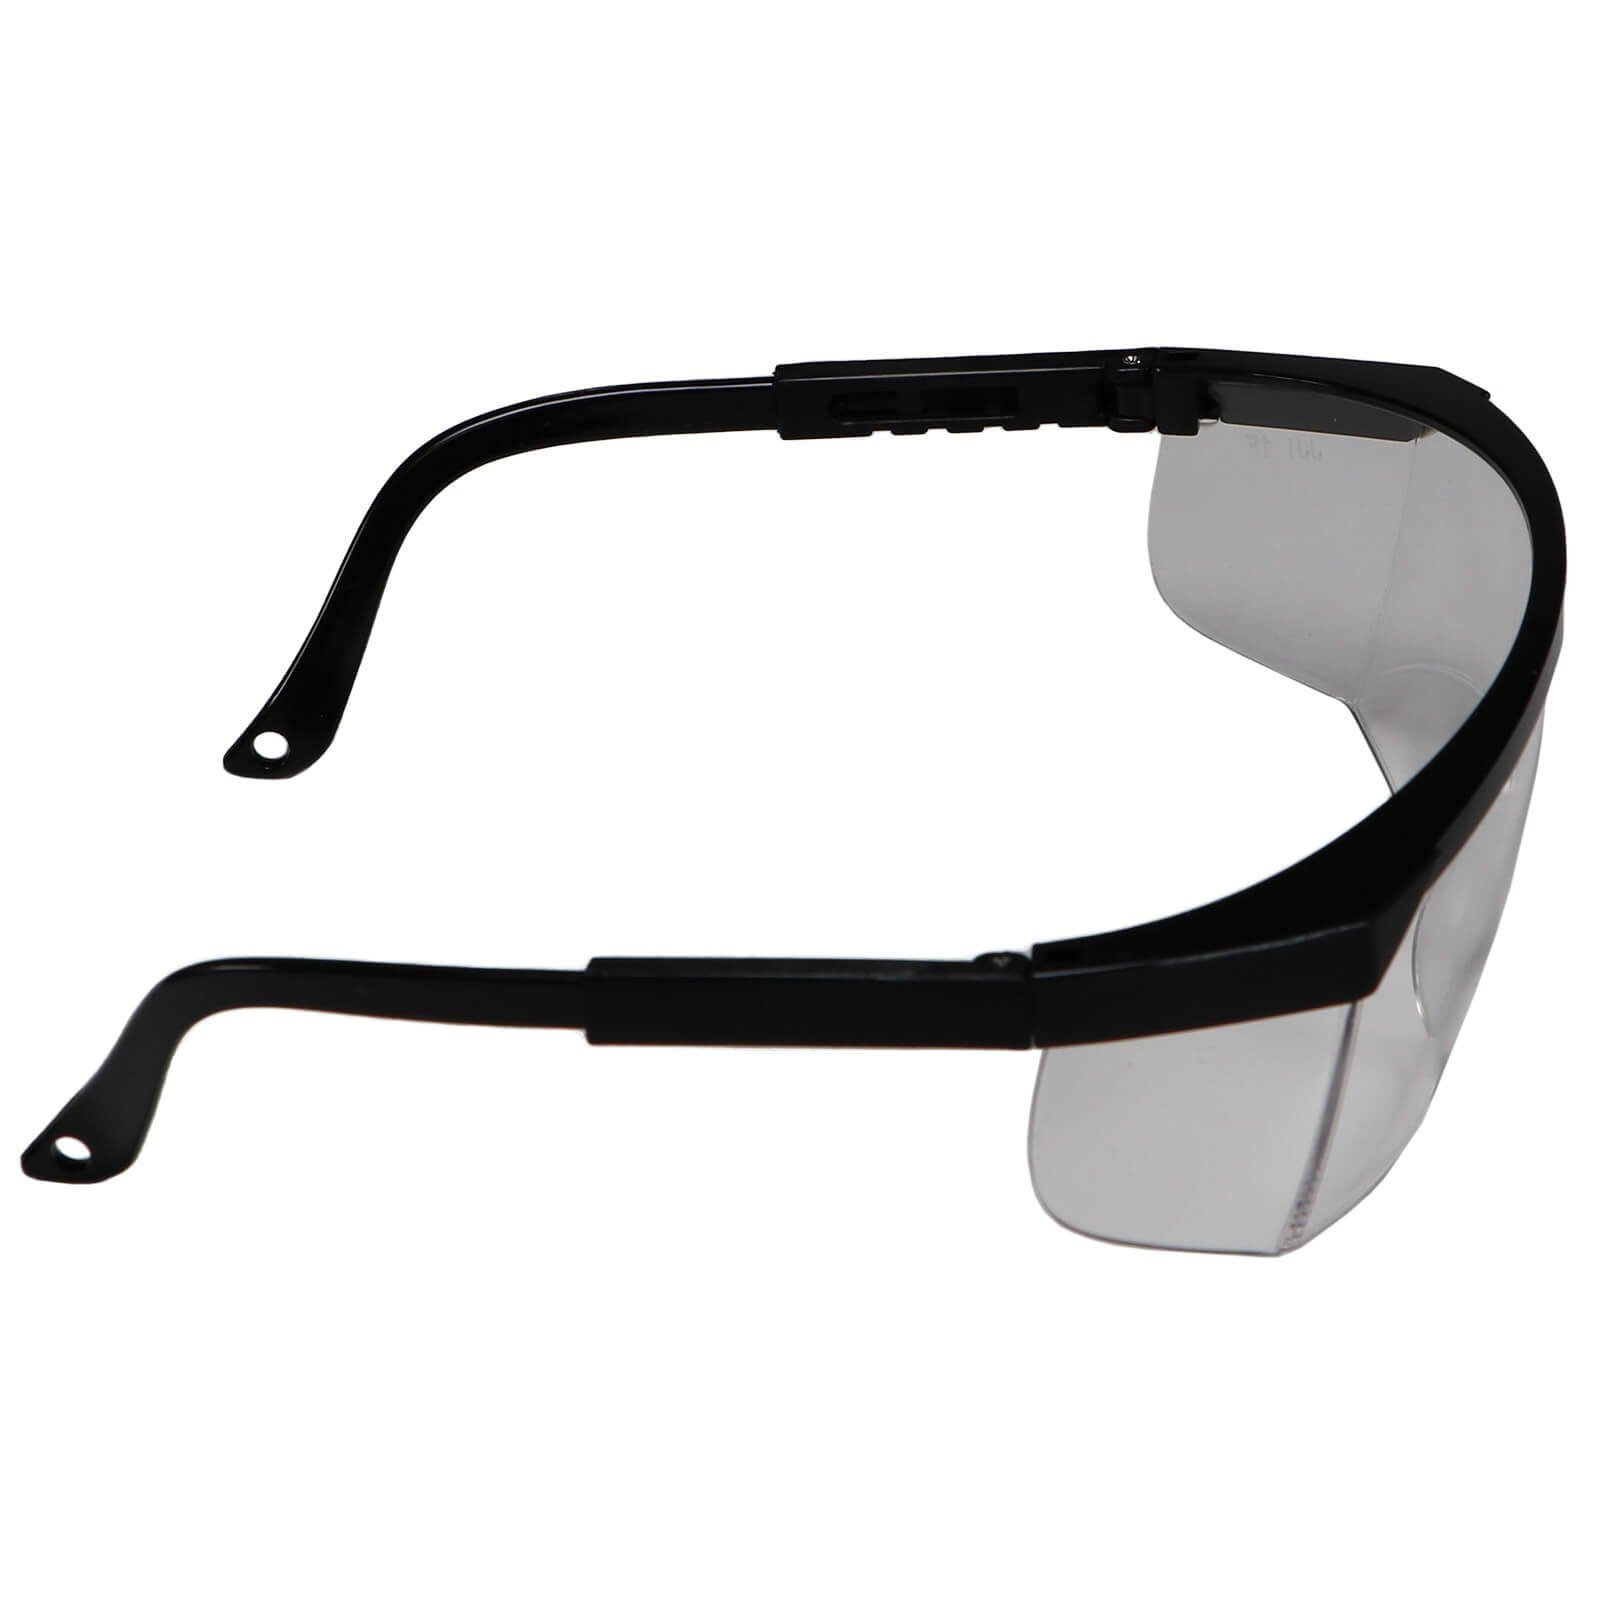 Arbeitsschutzbrille Schutzbrille Vollsicht EN166 Arbeitsbrille farblos Beast